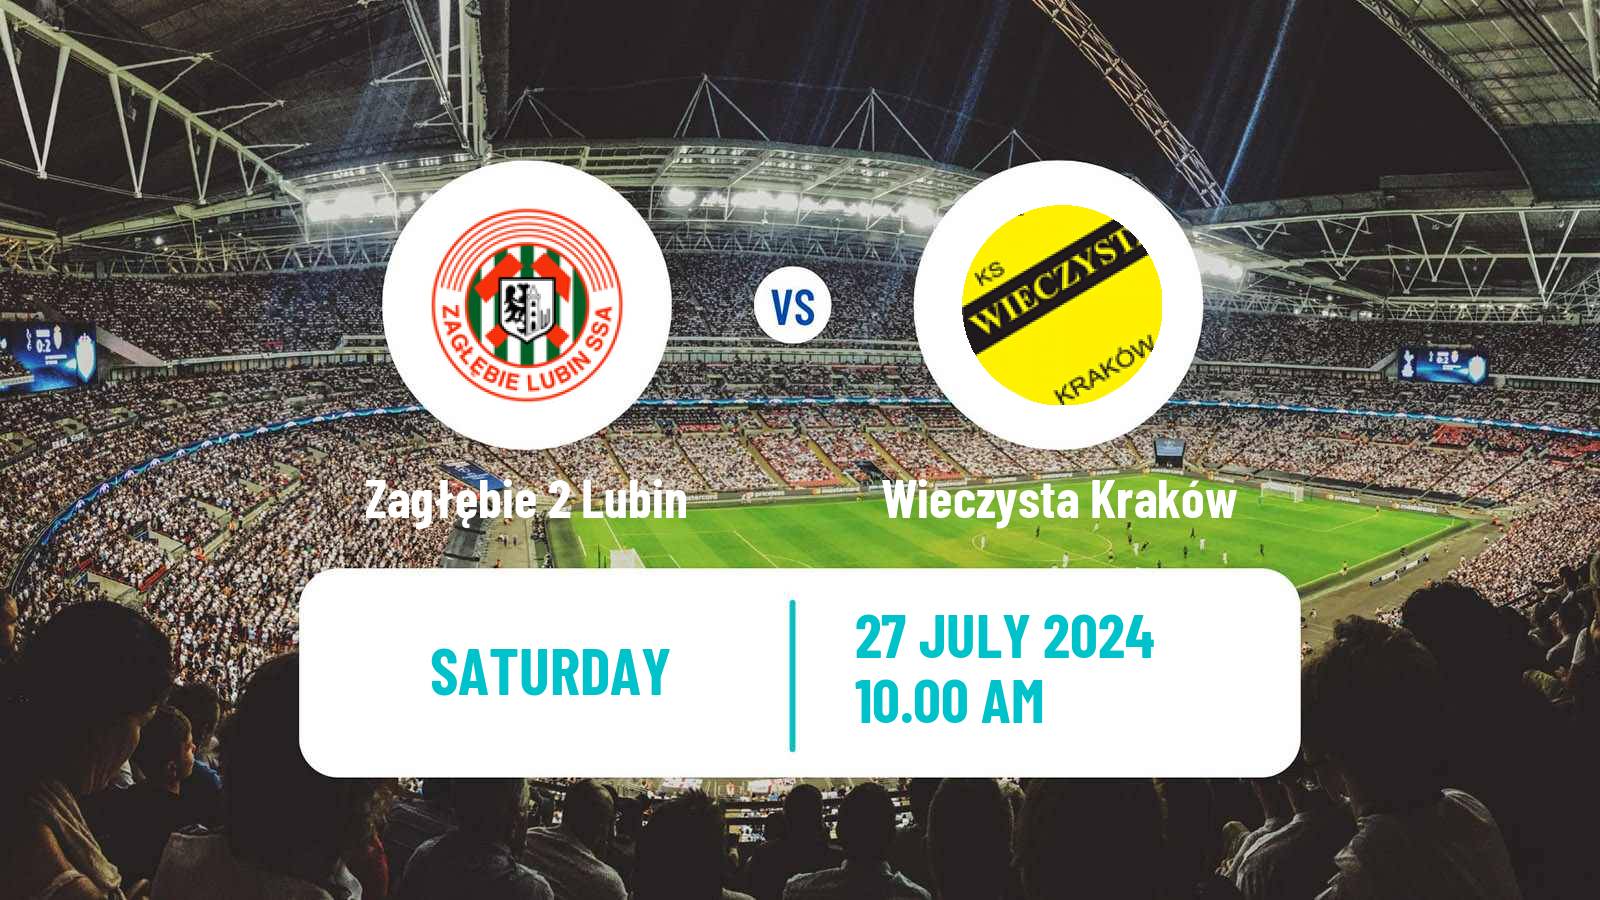 Soccer Polish Division 2 Zagłębie 2 Lubin - Wieczysta Kraków